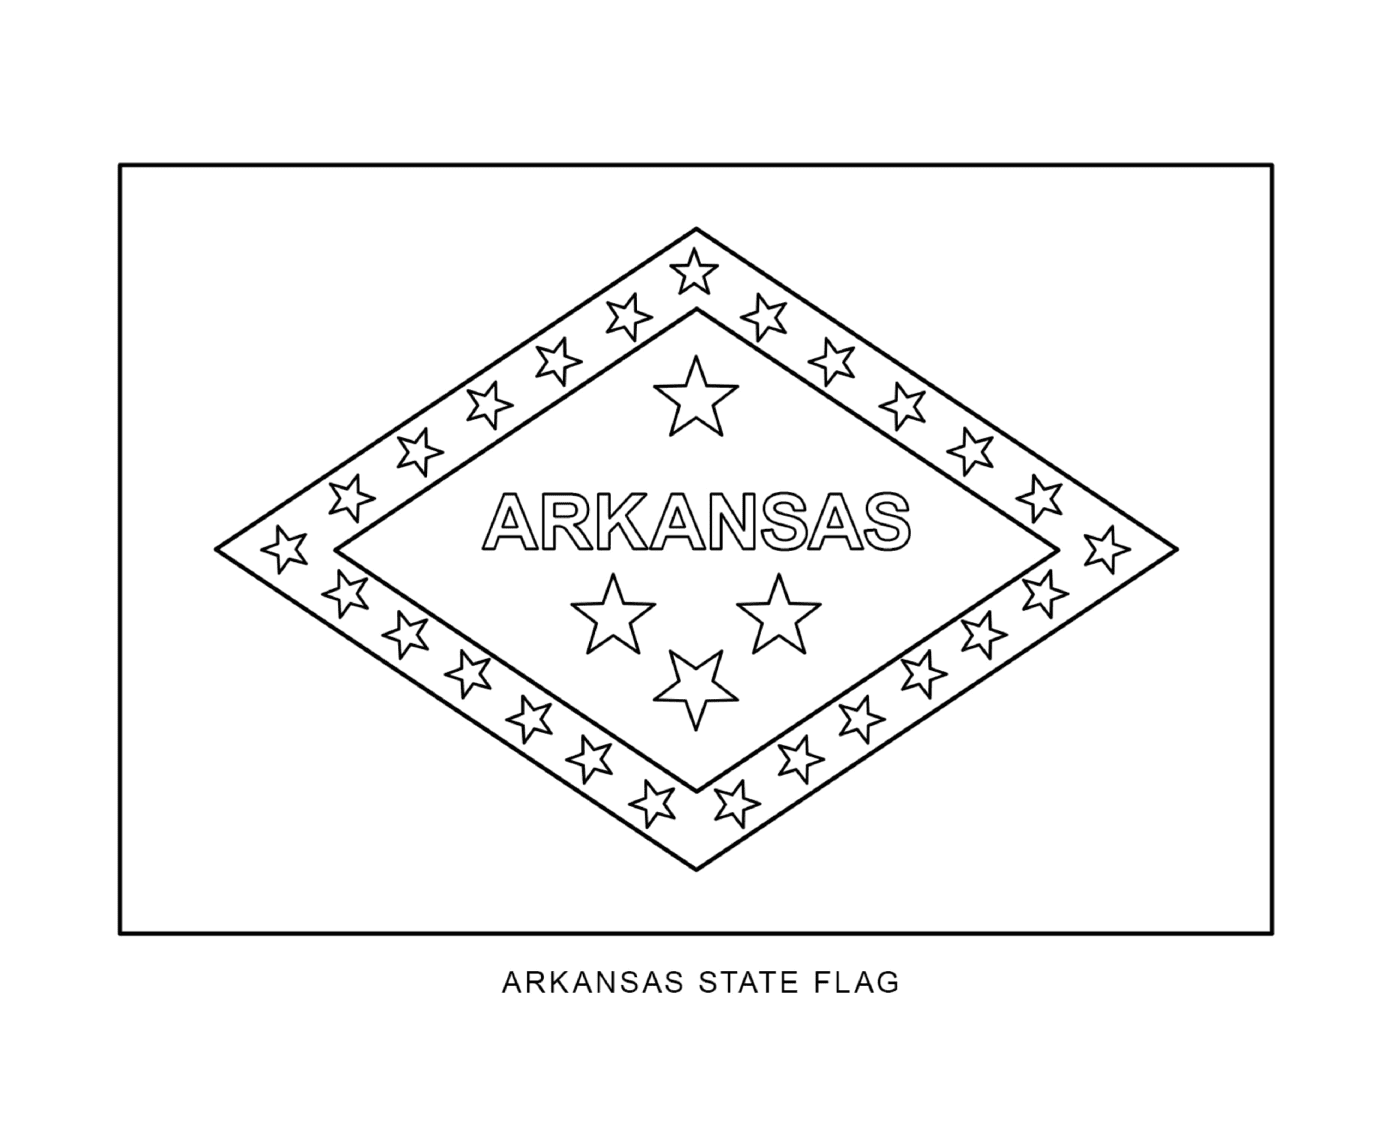  Bandera del Estado de Arkansas compuesta por estrellas 